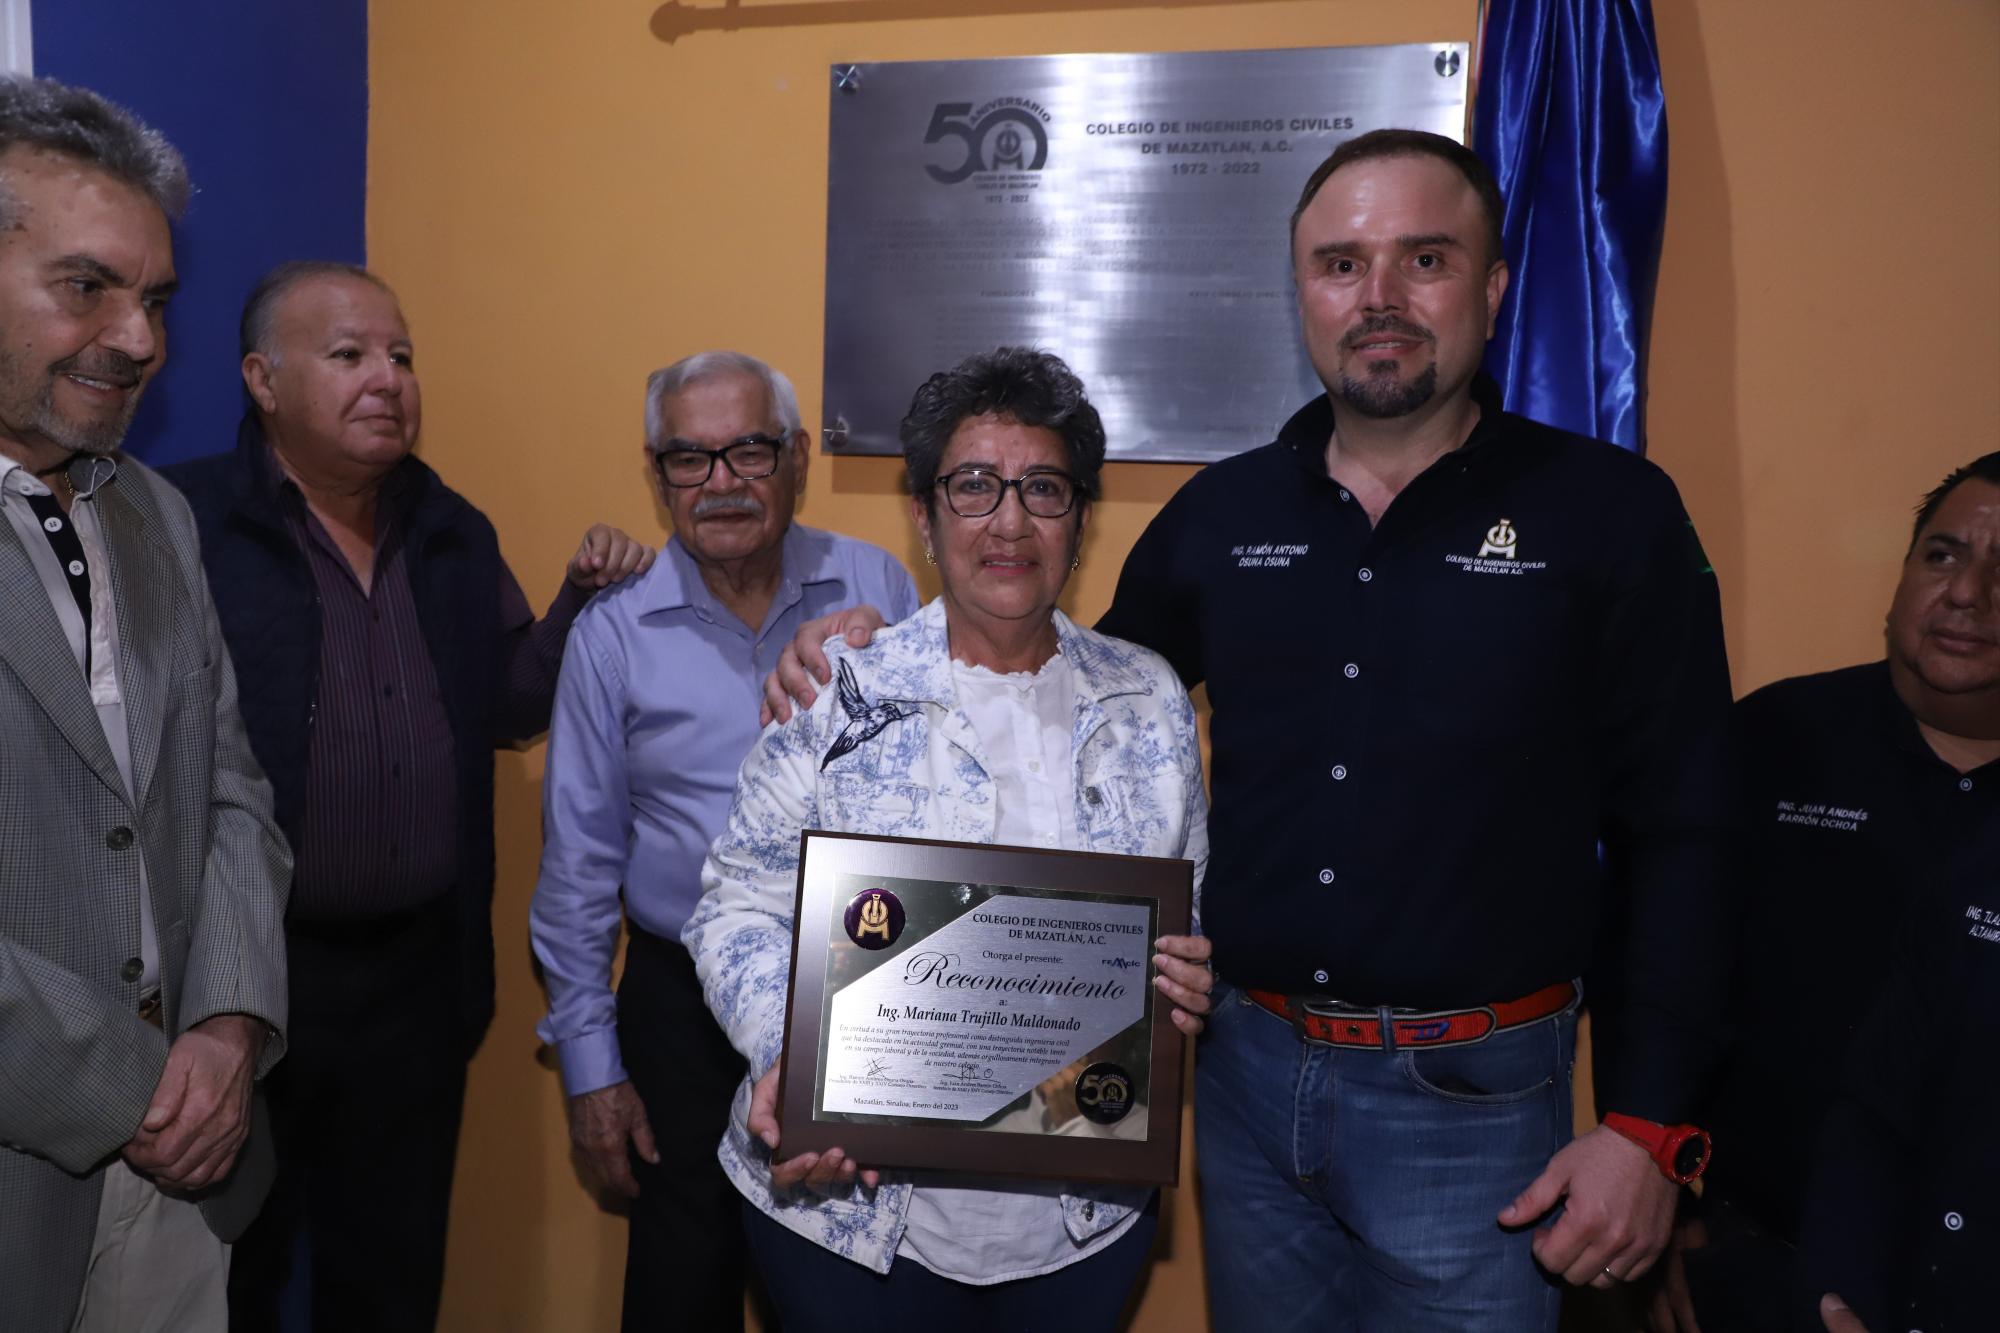 $!Develación de placa por el 50 aniversario del Colegio de Ingenieros Civiles de Mazatlán A. C.